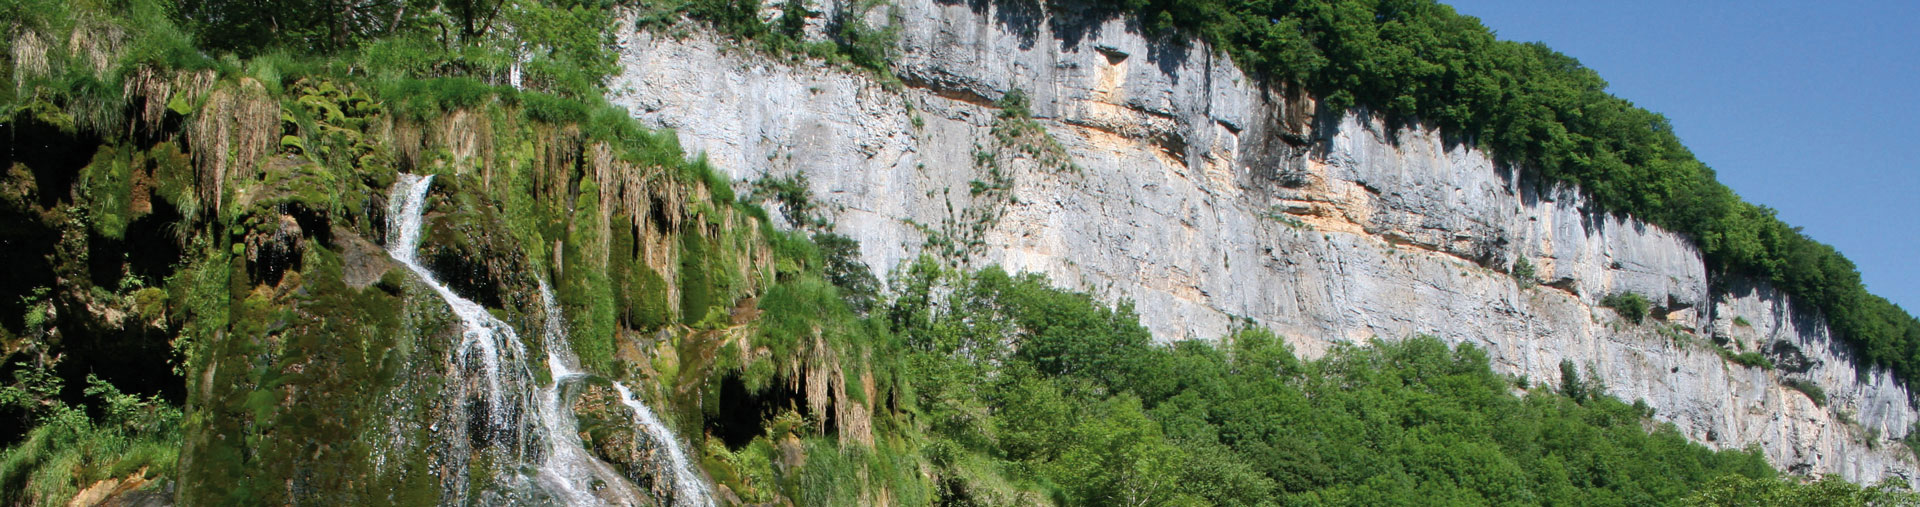 Patrimoine Culturel et Géologique au coeur du Jura et du Haut-Doubs - Deuxième image